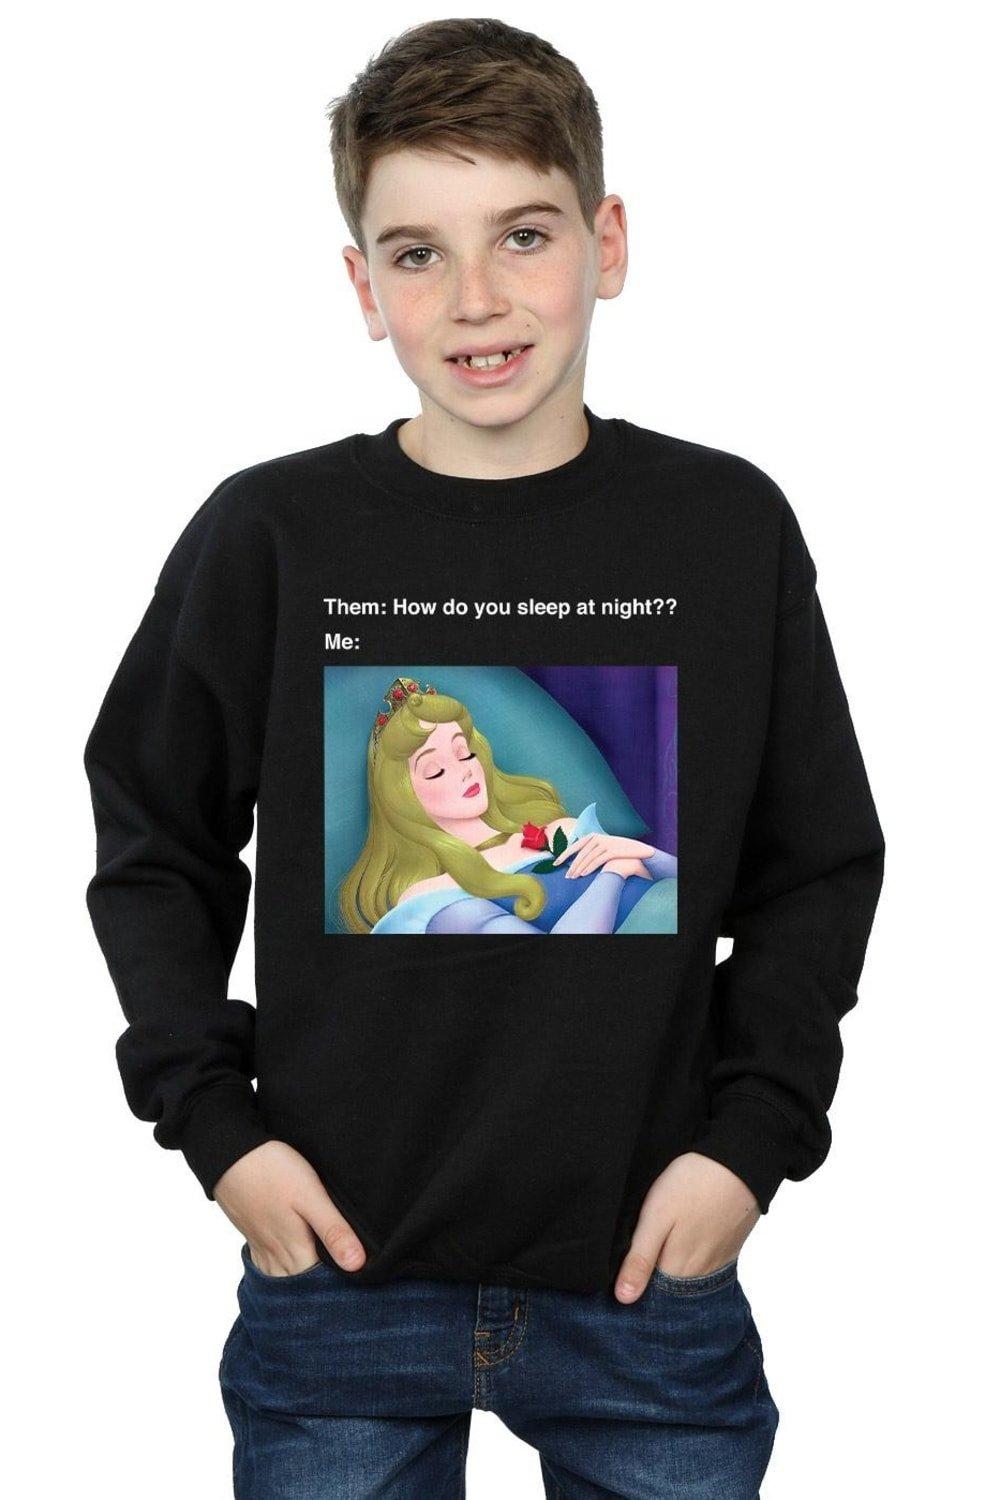 Sleeping Beauty Meme Sweatshirt